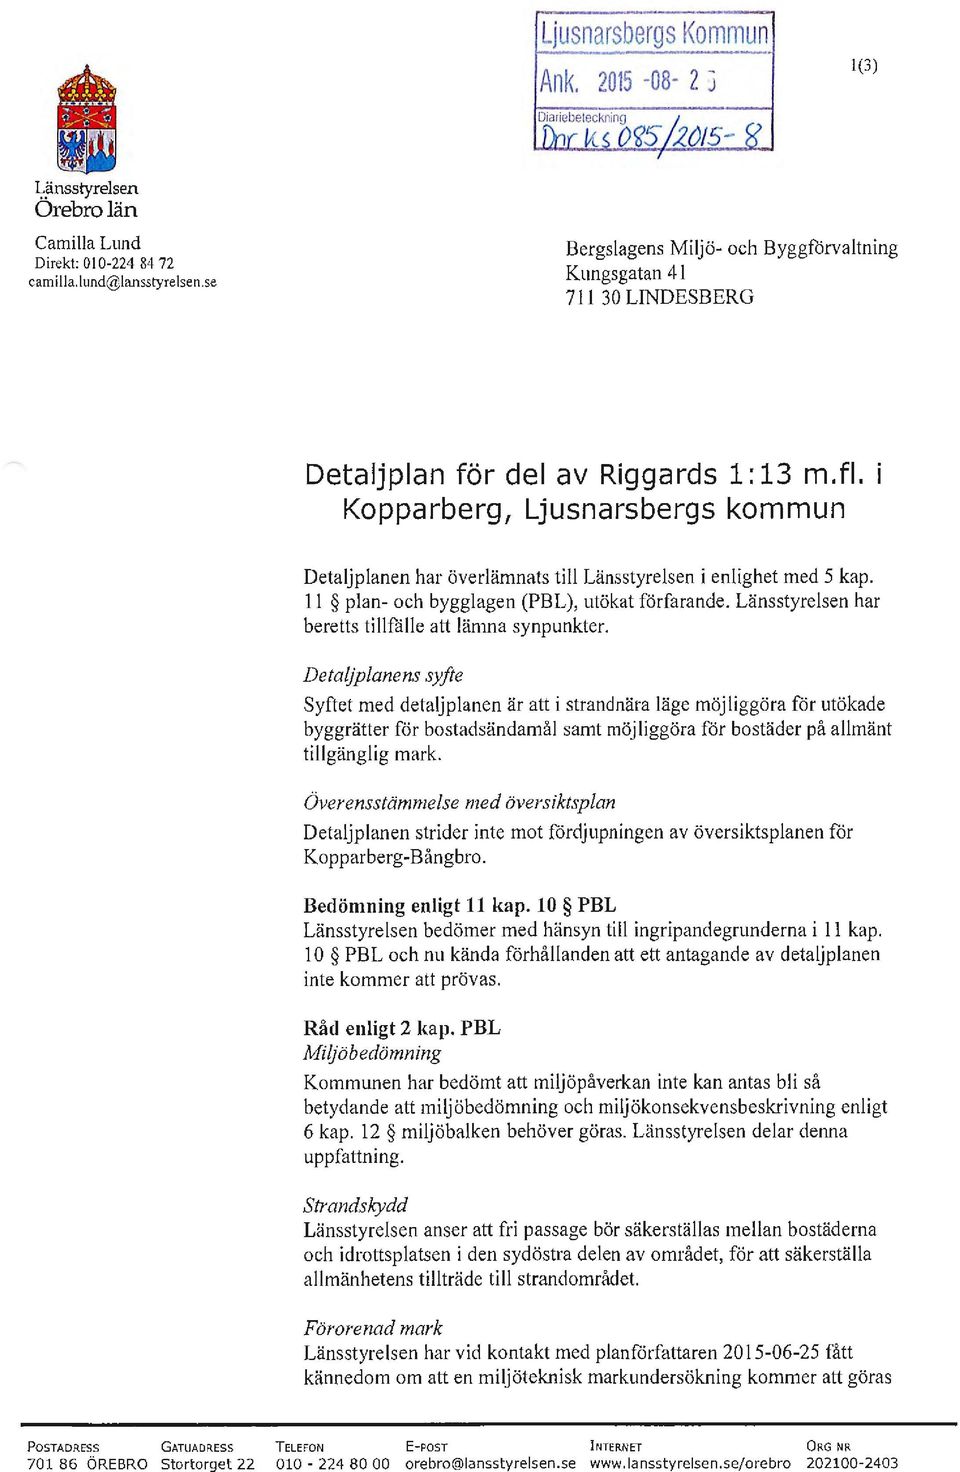 Kopparberg, Ljusnarsbergs kommun Detaljplanen har överlämnats till Länsstyrelsen i enlighet med 5 kap. 11 plan- och bygglagen (PBL), utökat förfarande.